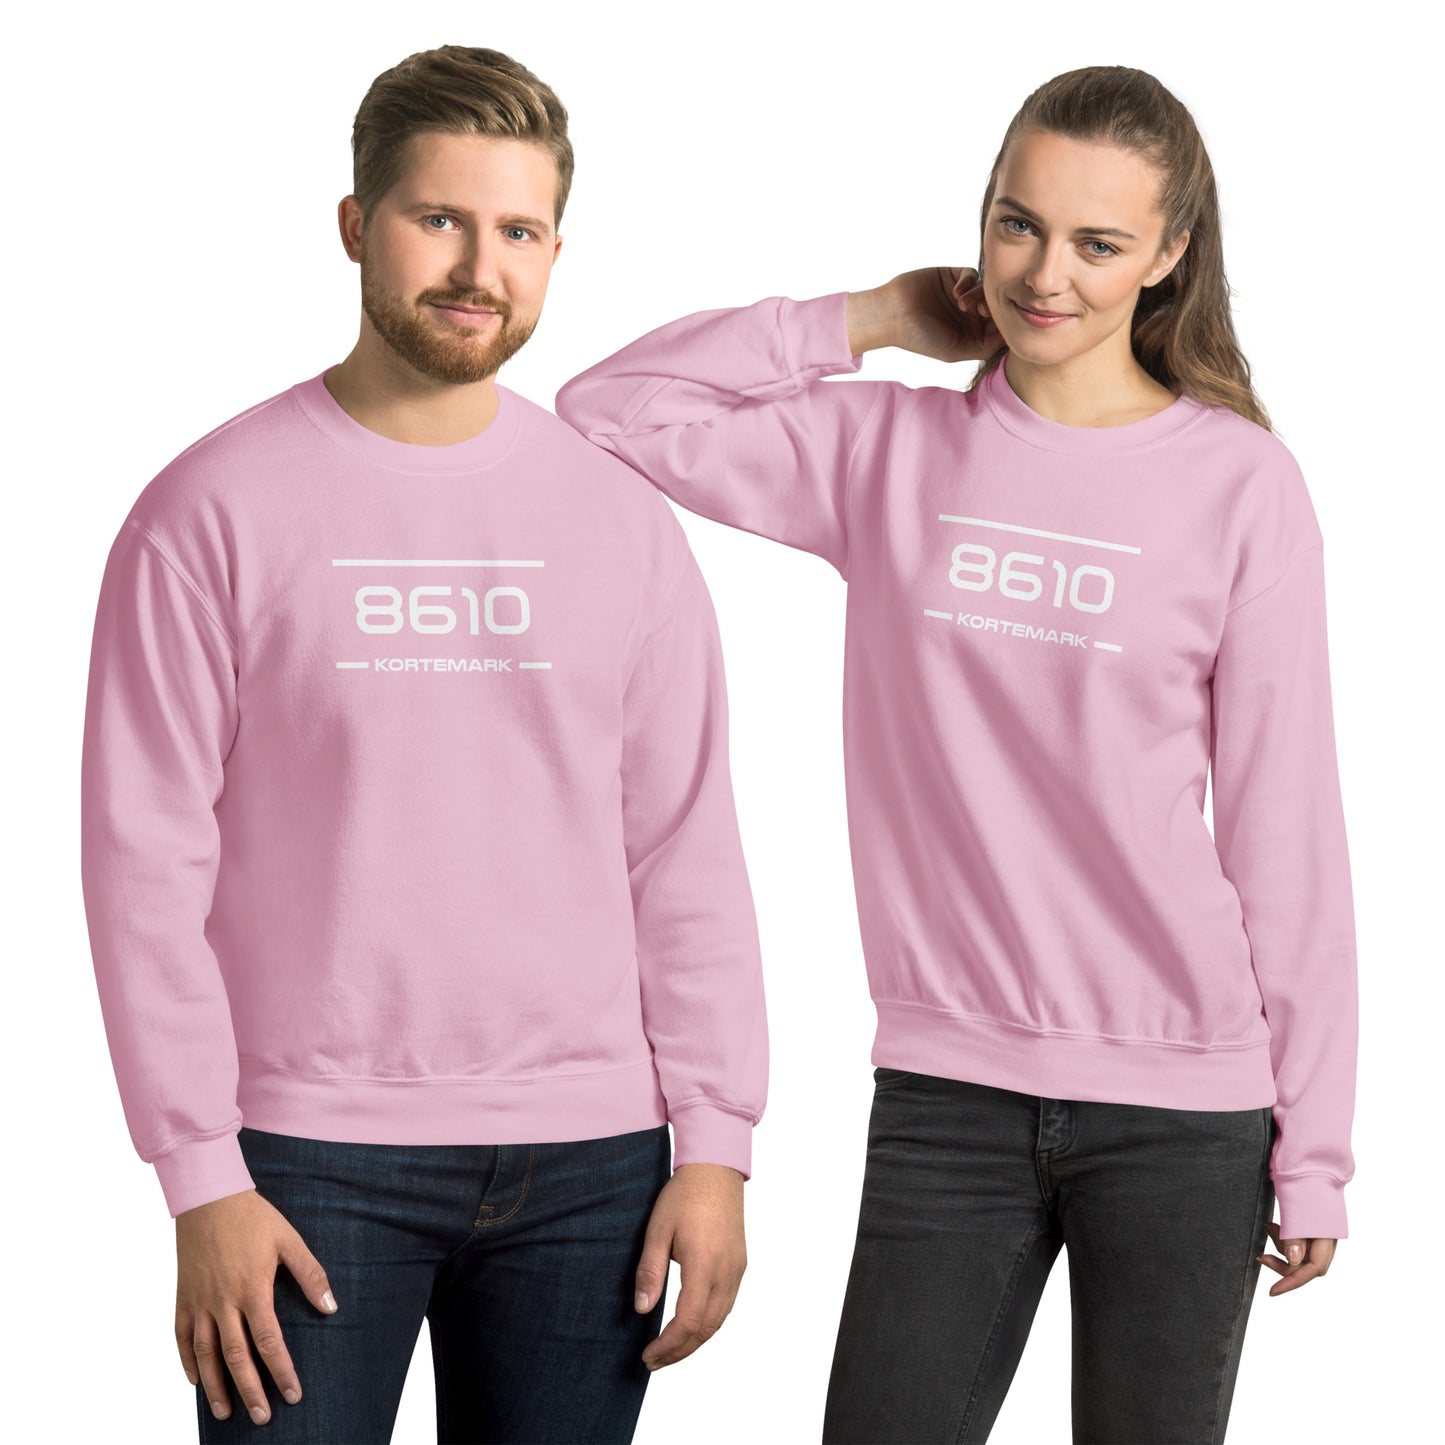 Sweater - 8610 - Kortemark (M/V)